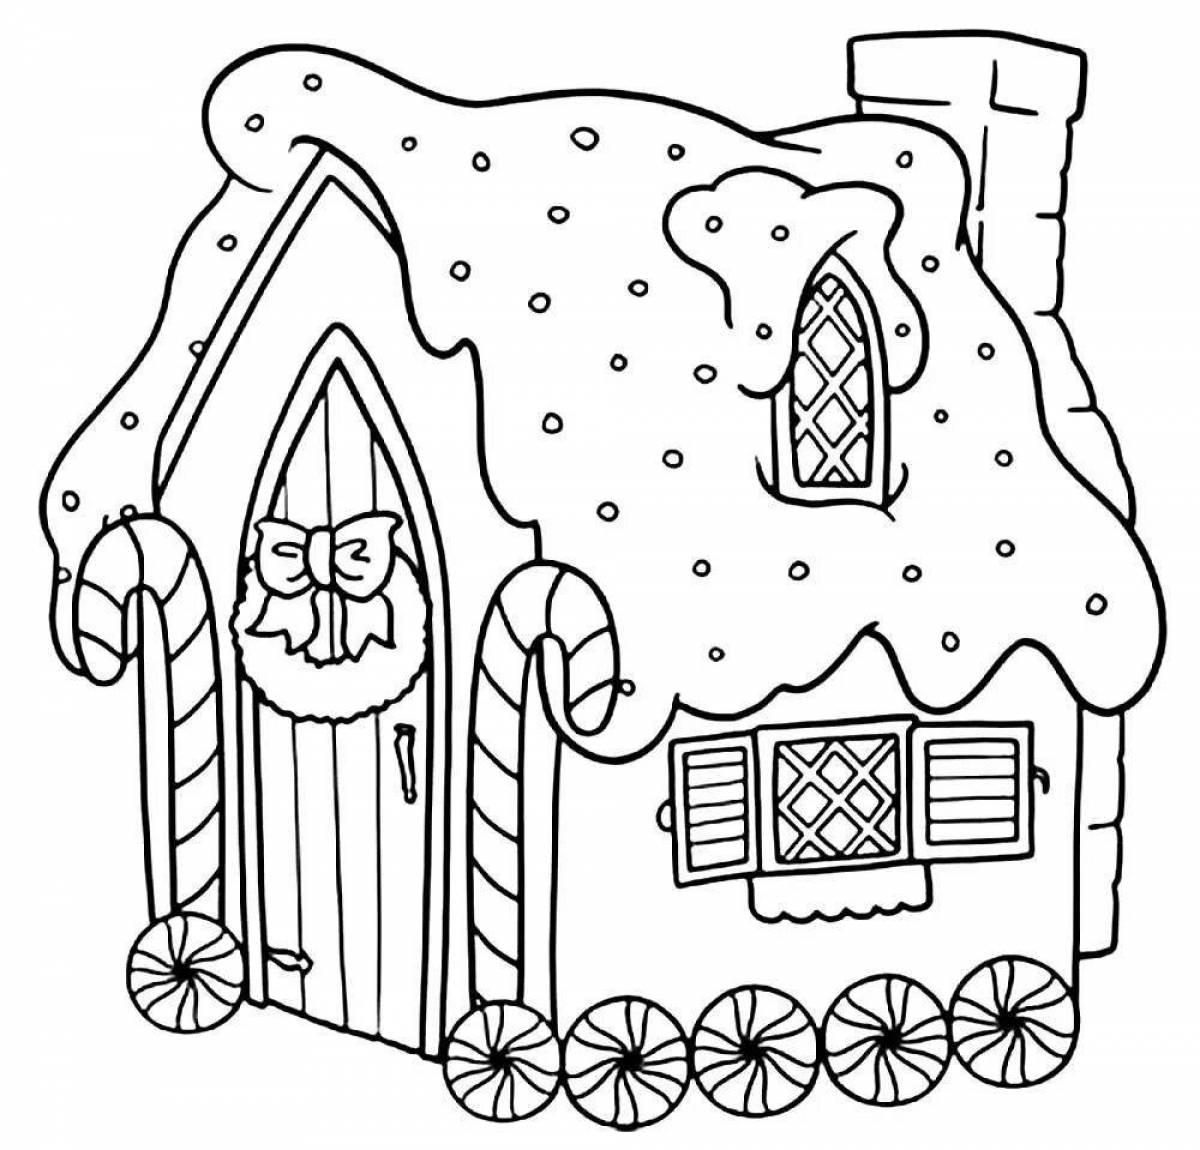 Забавная раскраска рождественский пряничный домик